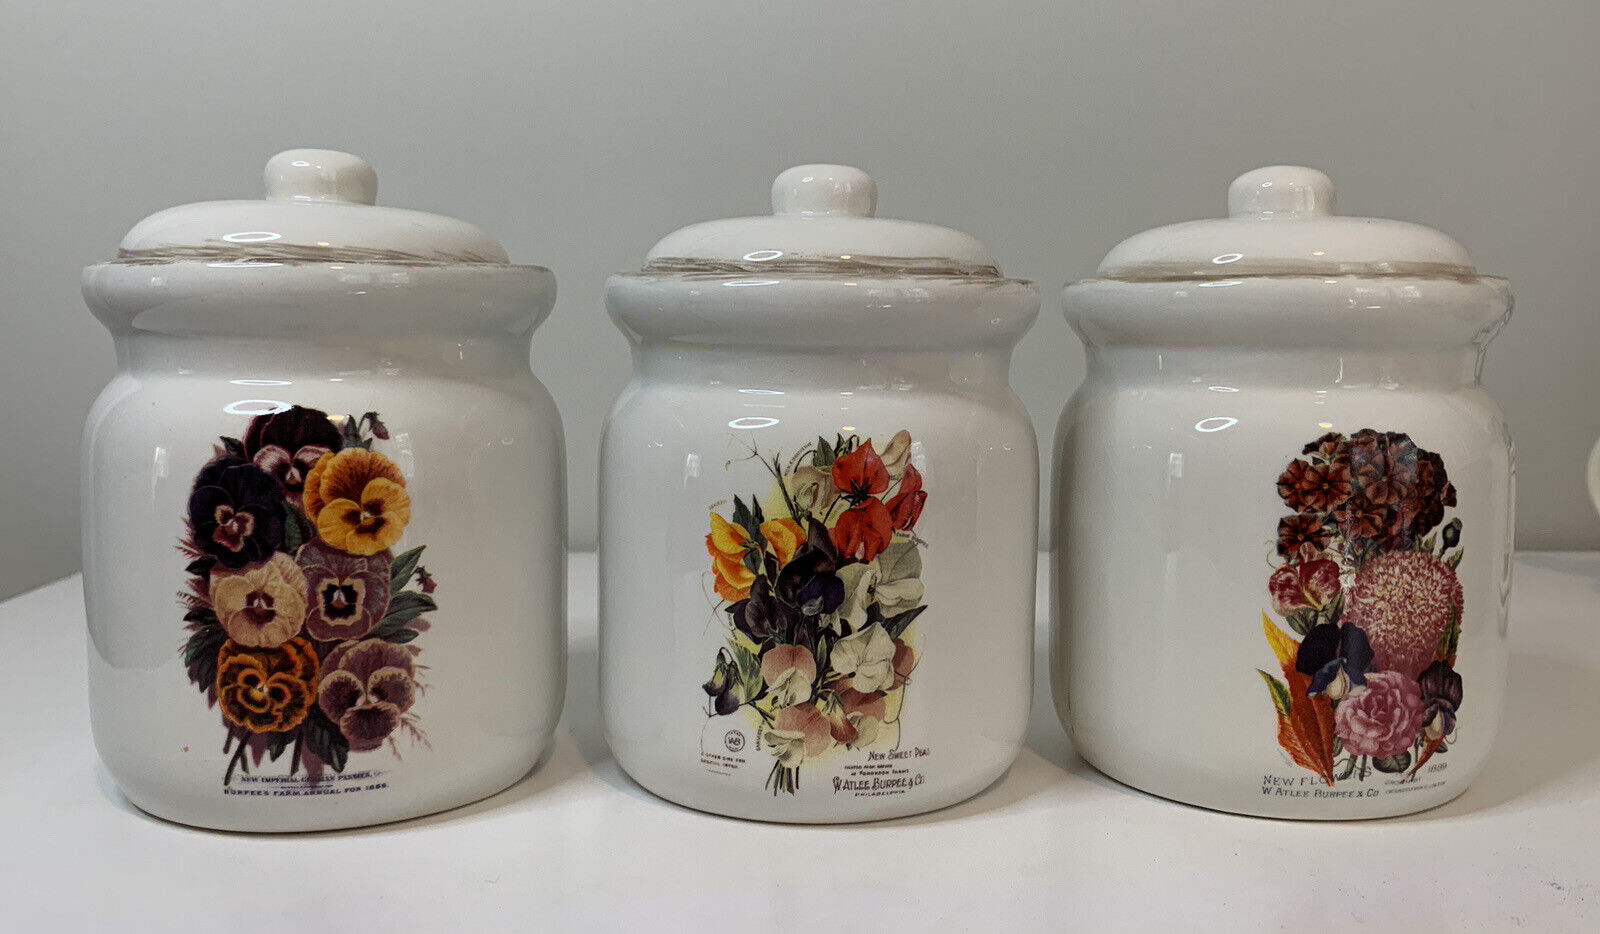 Vintage Cracker Barrel Ceramic Canister Set/3 Attlee Burpee Garden Seeds Flower